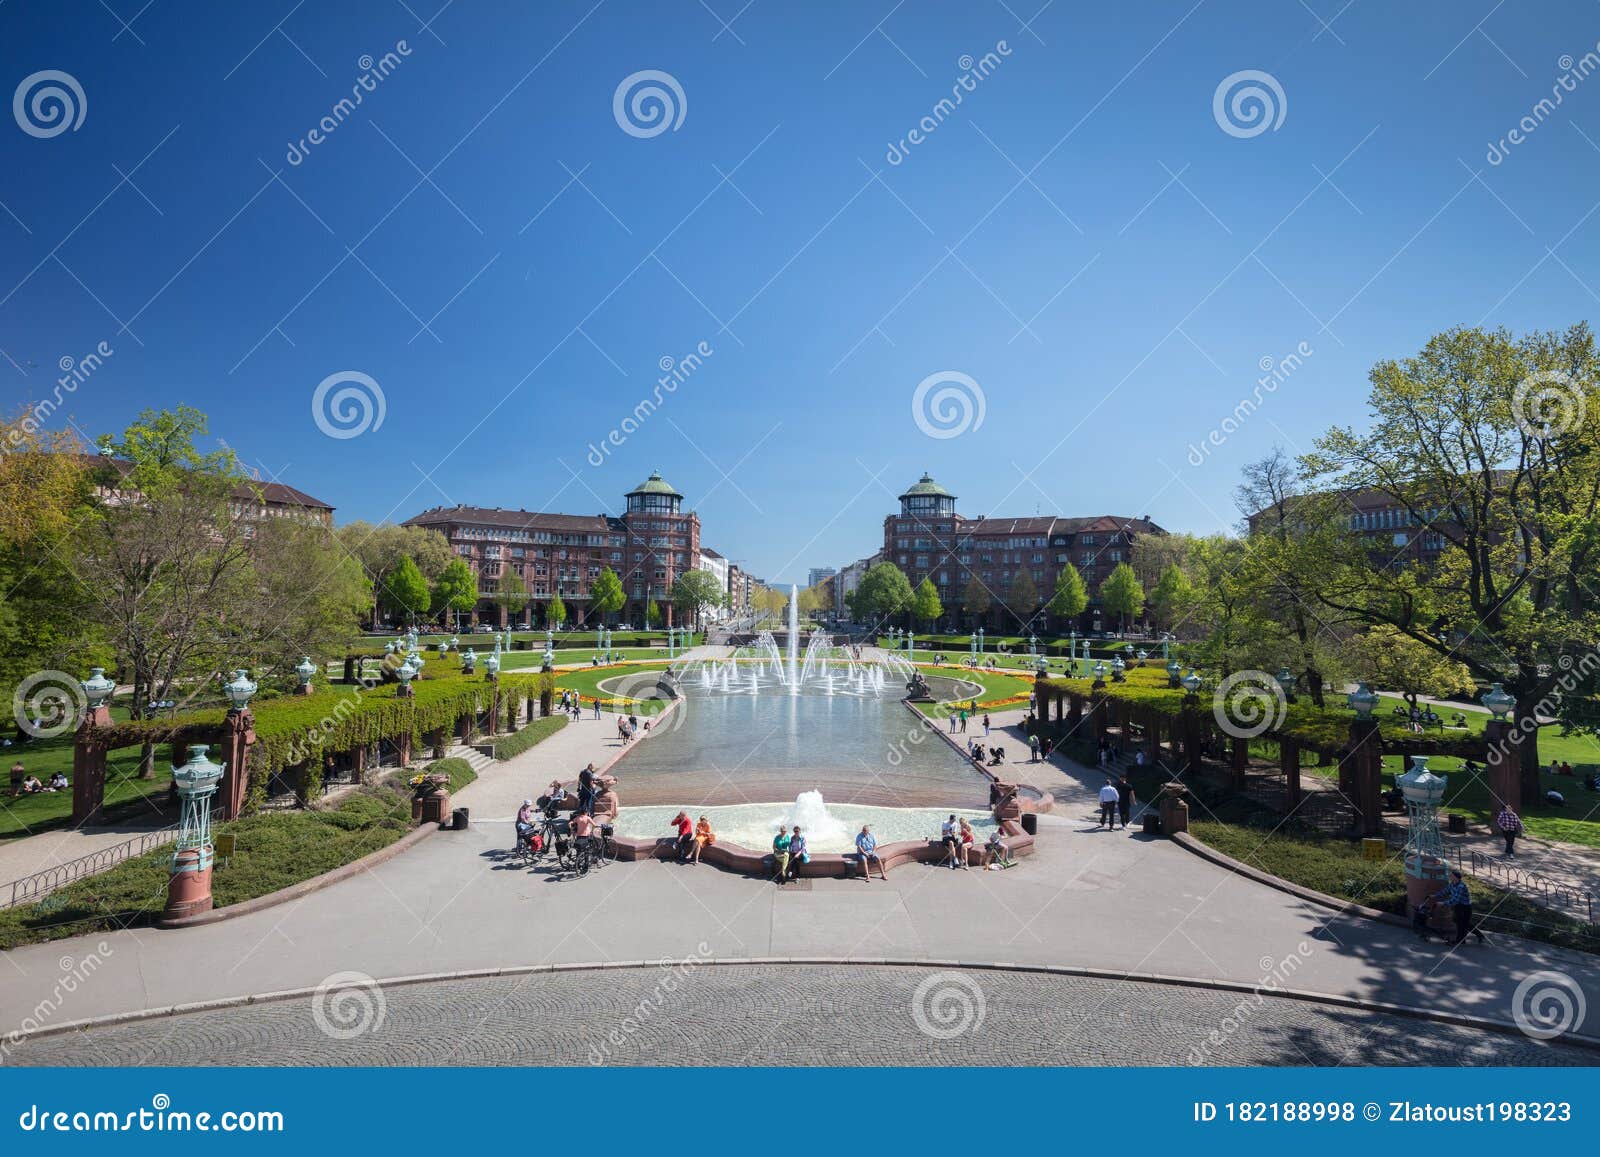 德国迈因海姆市 19年4月19日 曼海姆的中央广场水塔喷泉美景 美丽的公园编辑类库存照片 图片包括有目的地 都市风景